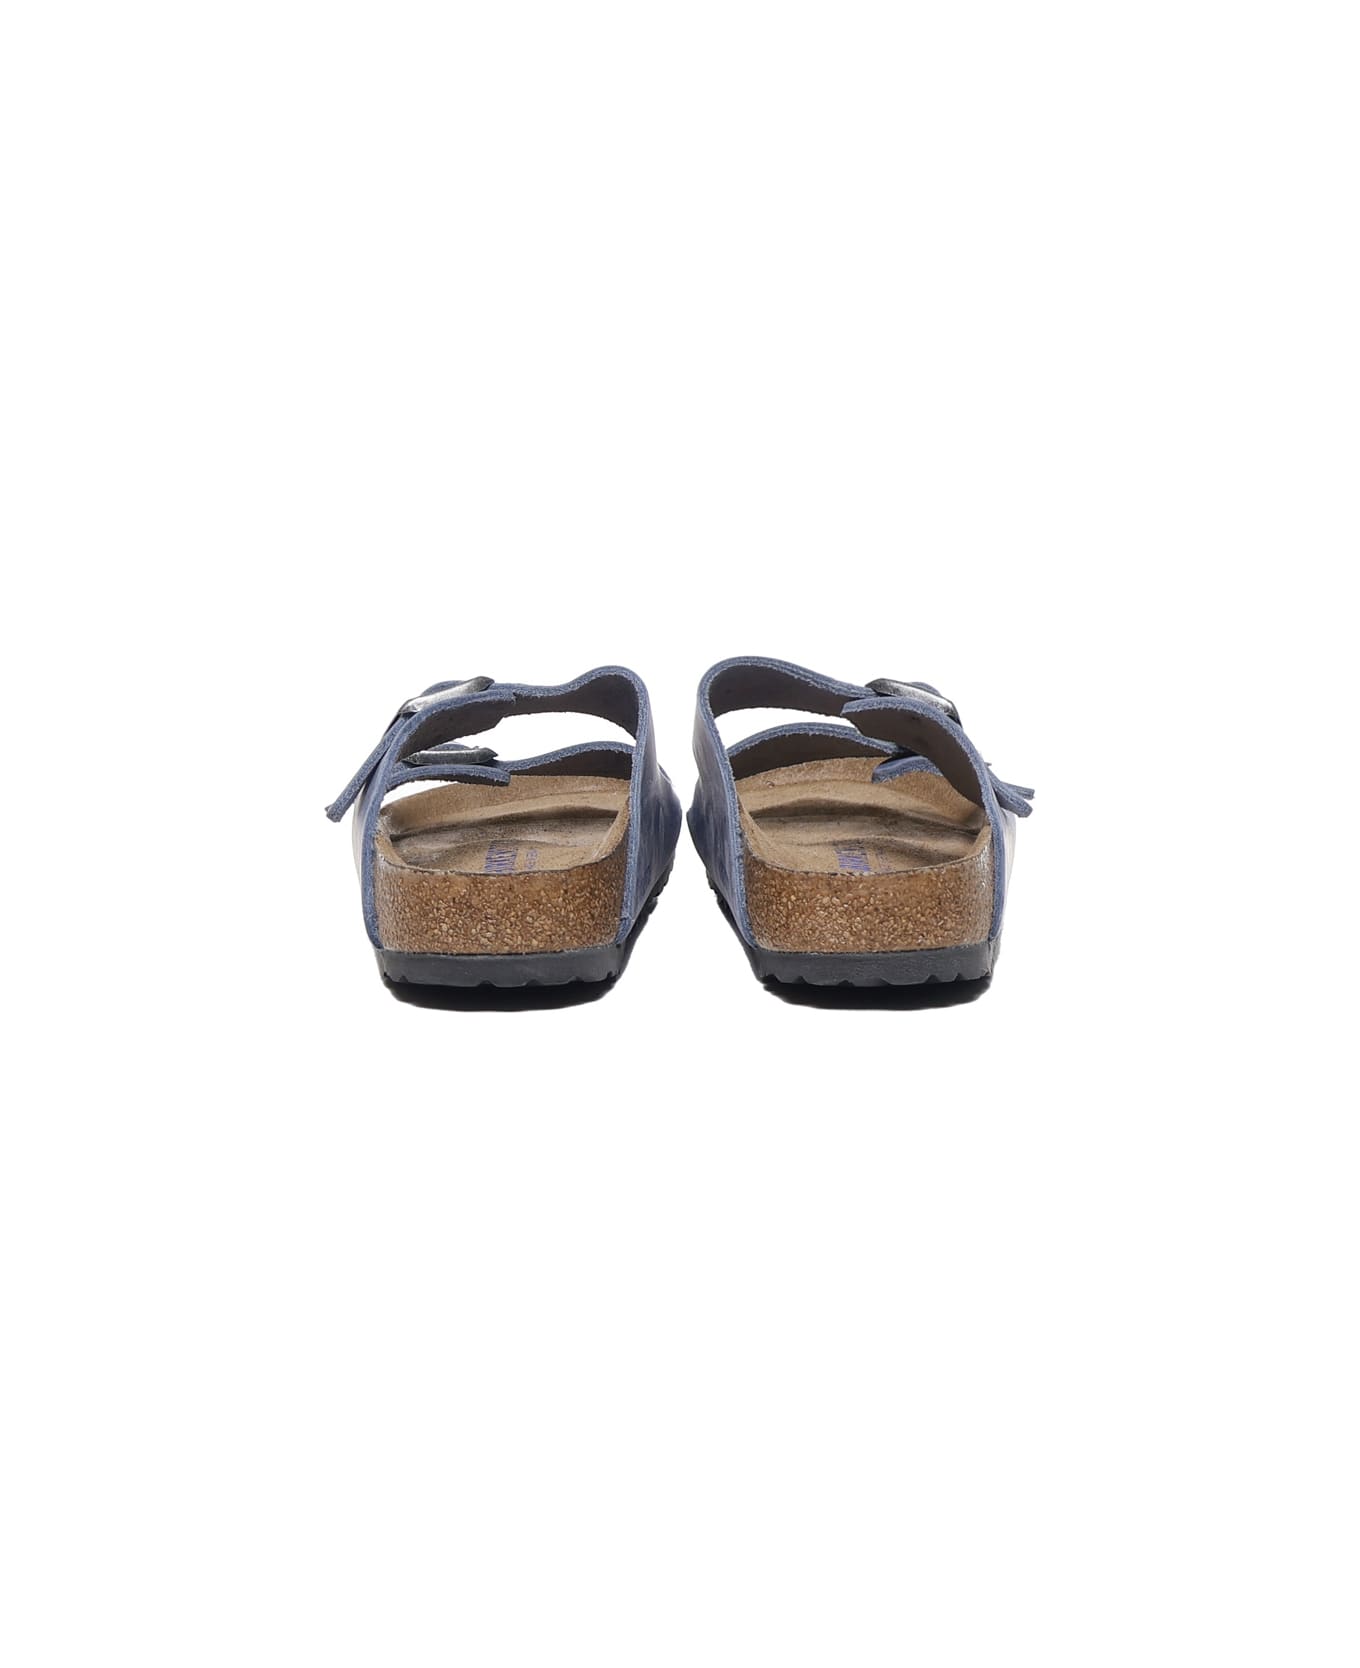 Birkenstock Ariziona Sandals With Dusty Blue Metal Buckle - Dusty blue